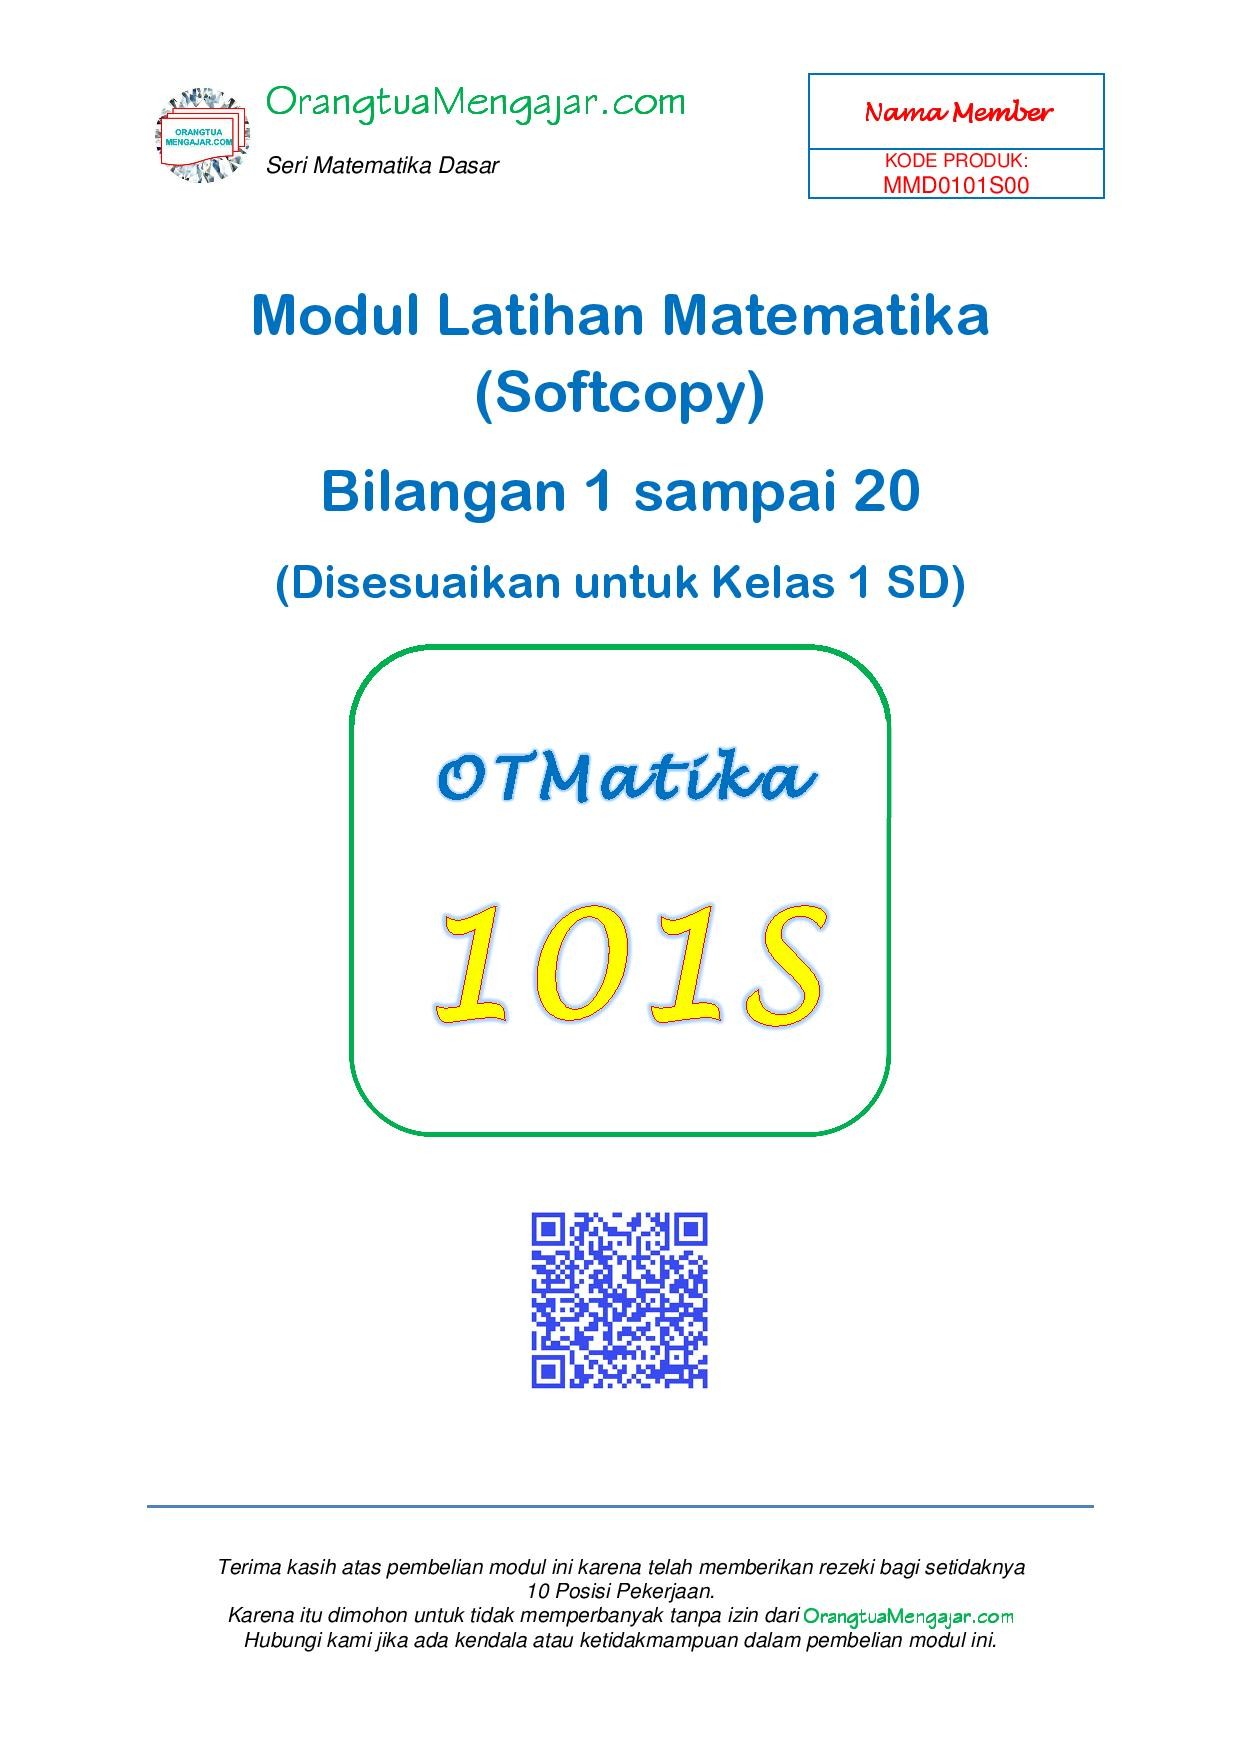 Modul Latihan Matematika Bilangan 1 Sampai 20 Edisi Softcopy